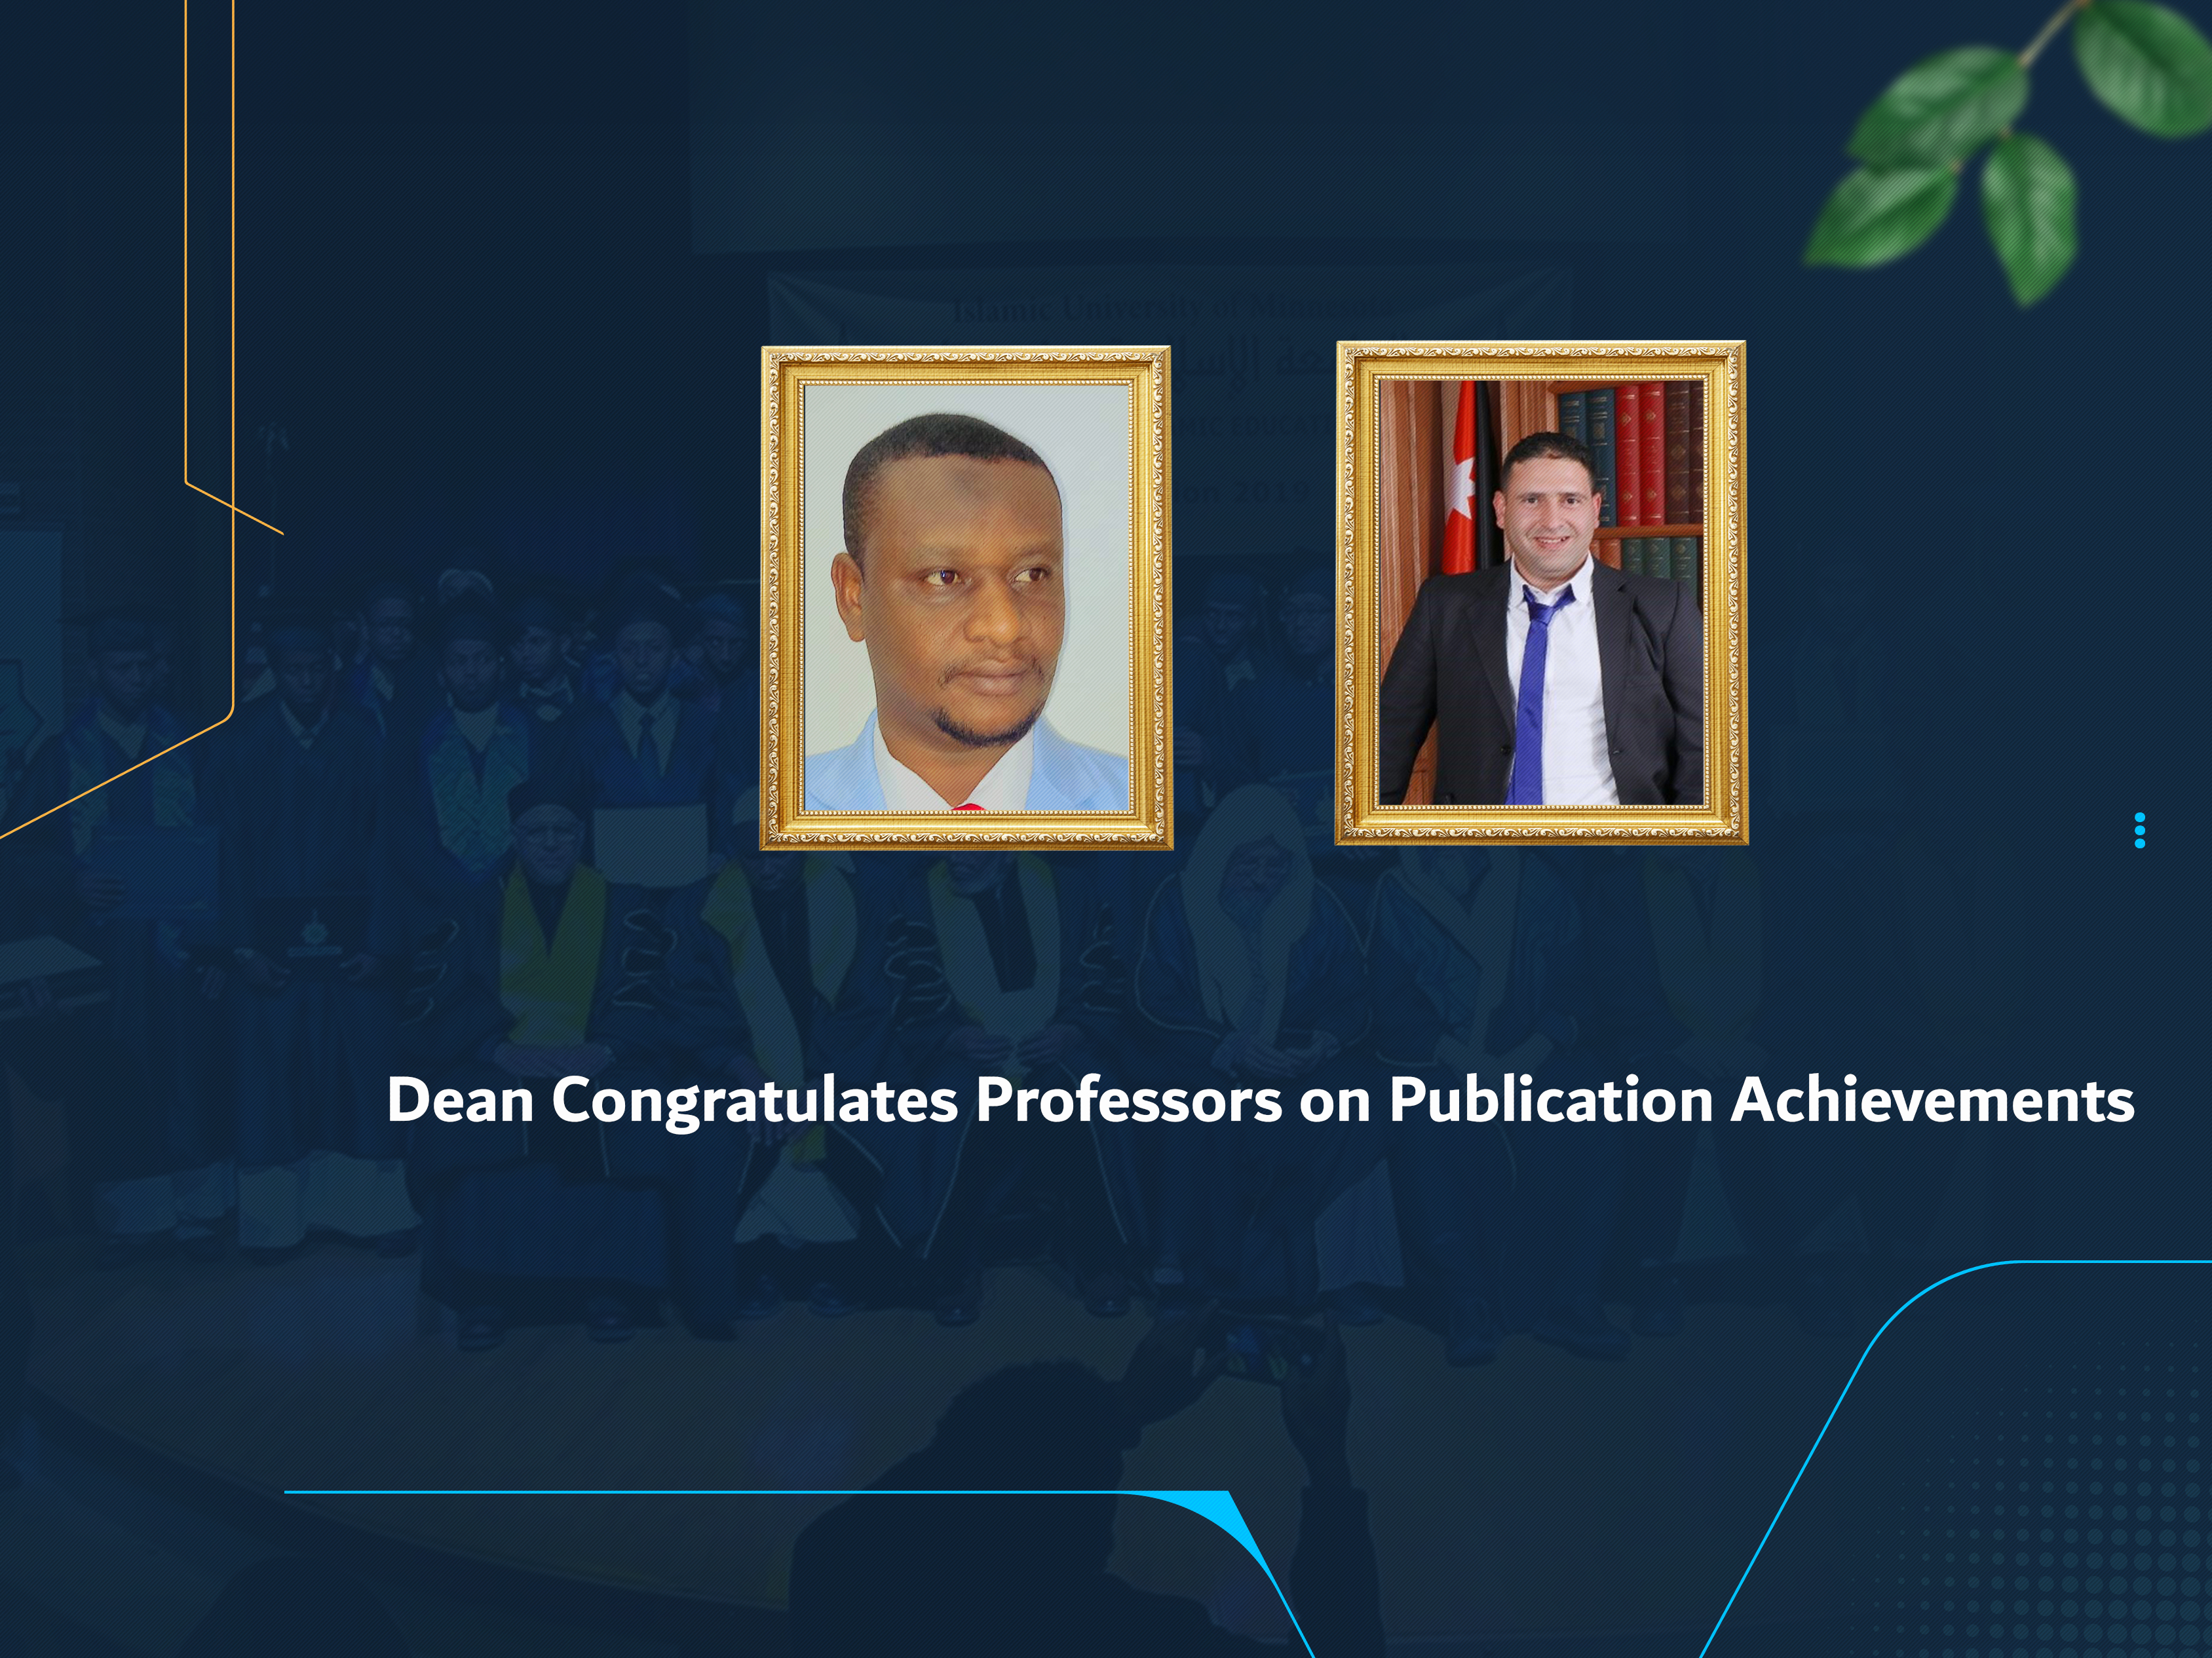 Dean Congratulates Professors on Publication Achievements